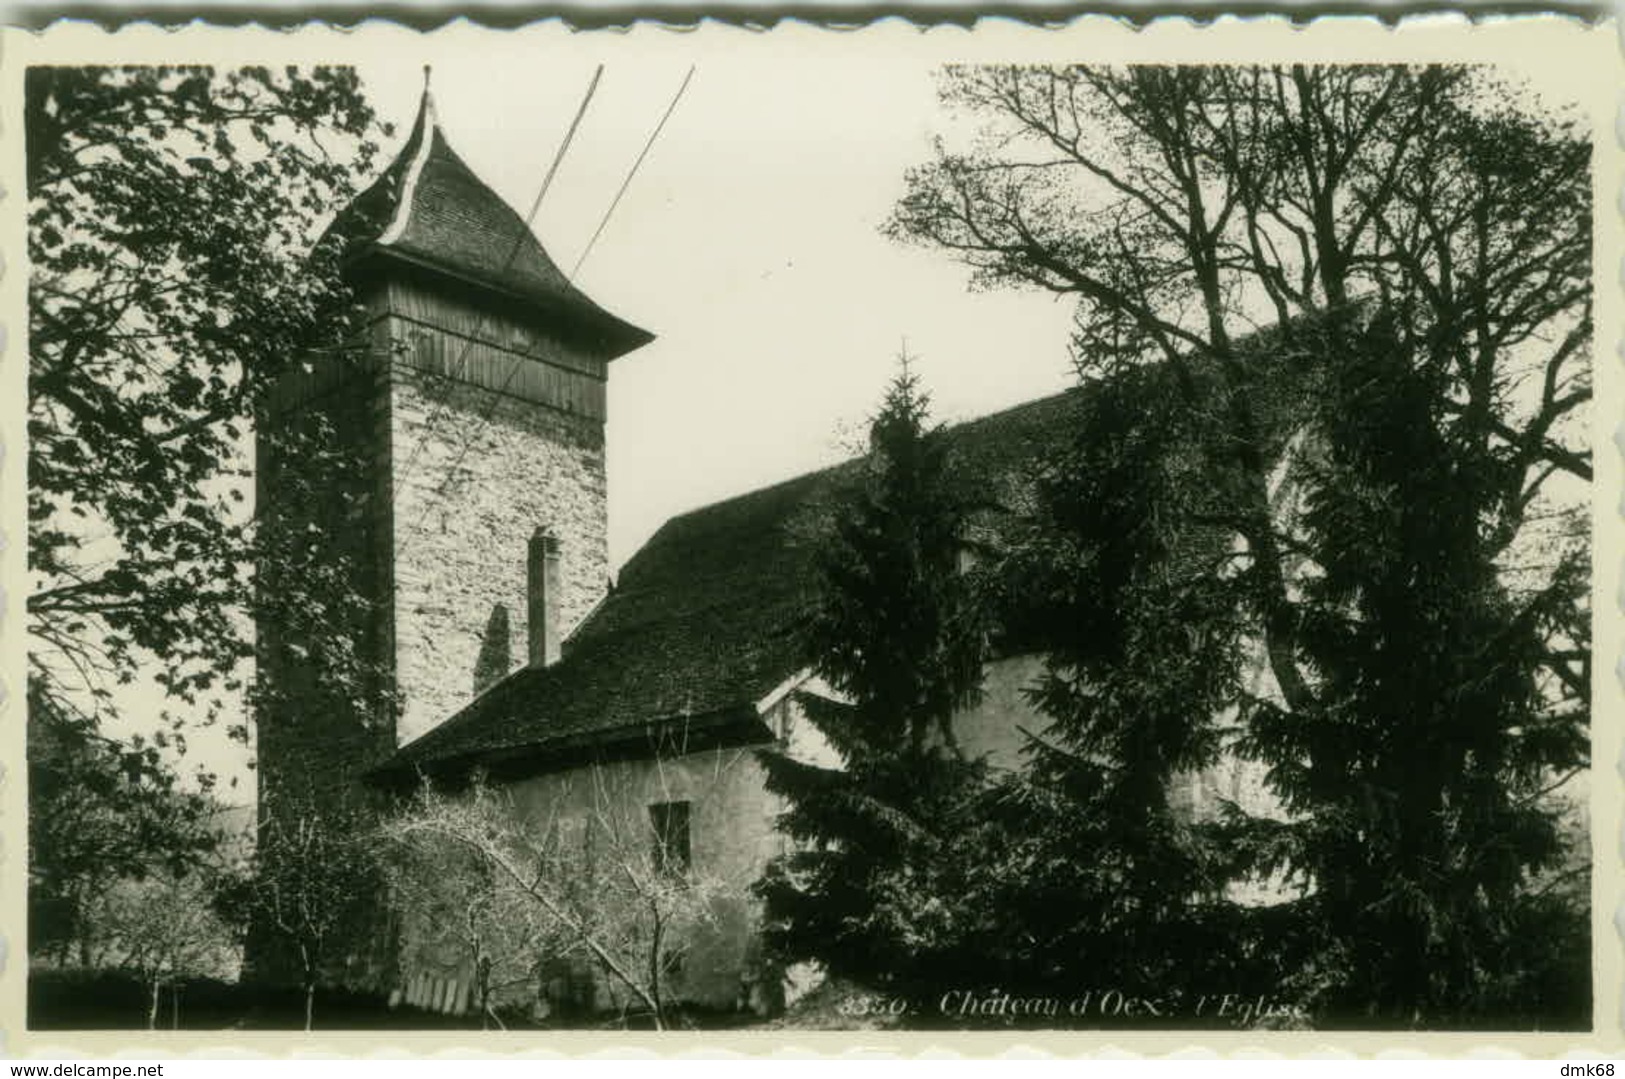 SWITZERLAND -  Château-d'Œx - L'EGLISE - PHOTO PERROCHET - 1950s ( BG2906) - Château-d'Œx